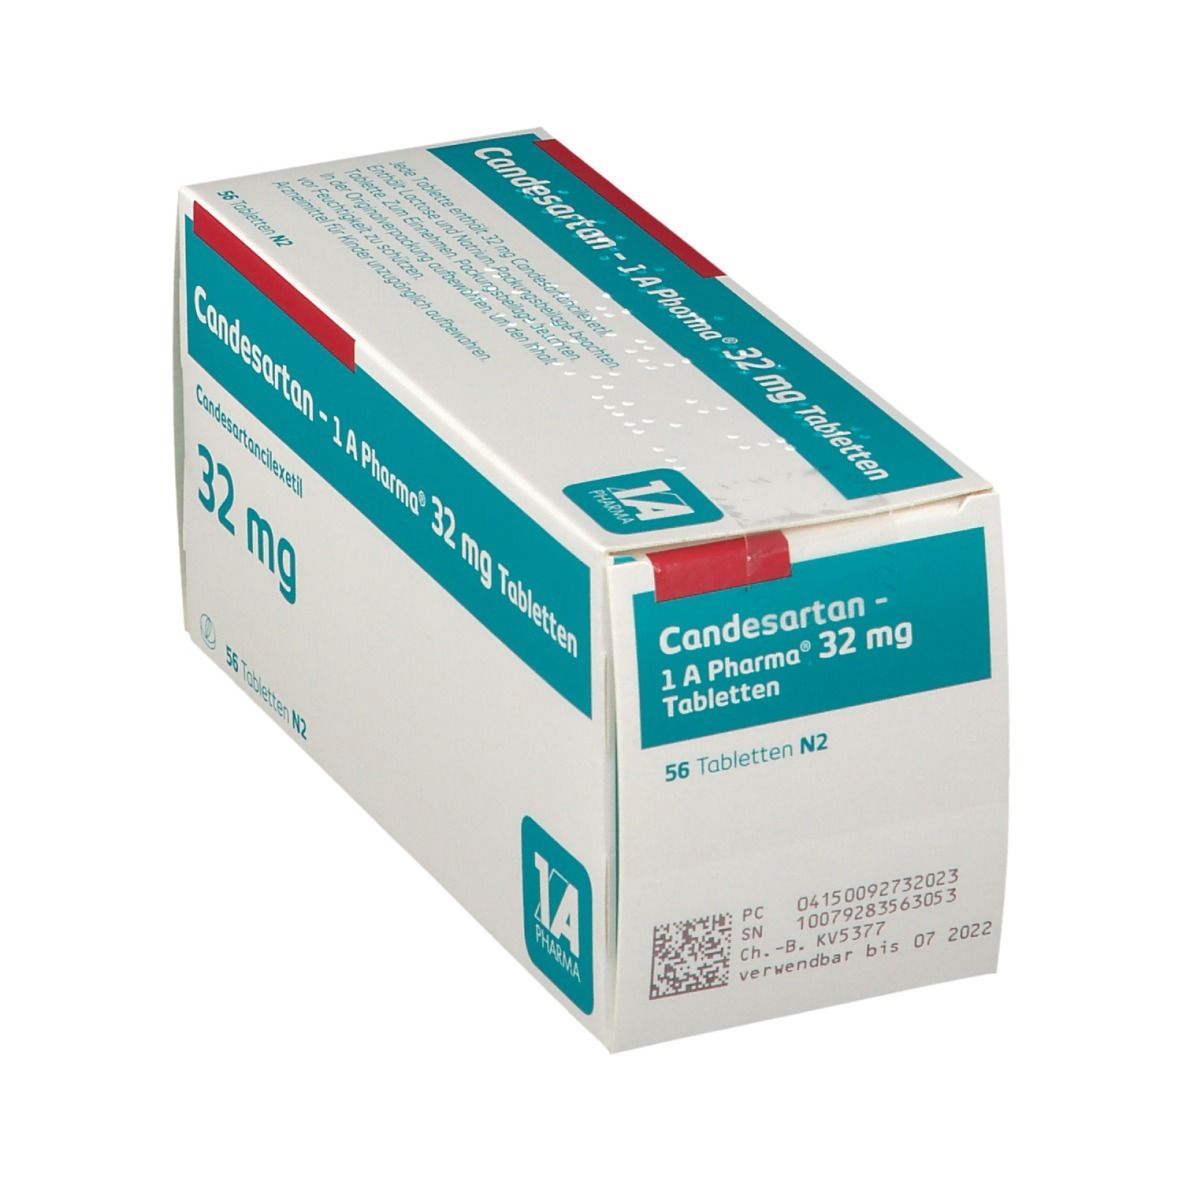 Candesartan 1A Pharma® 32Mg